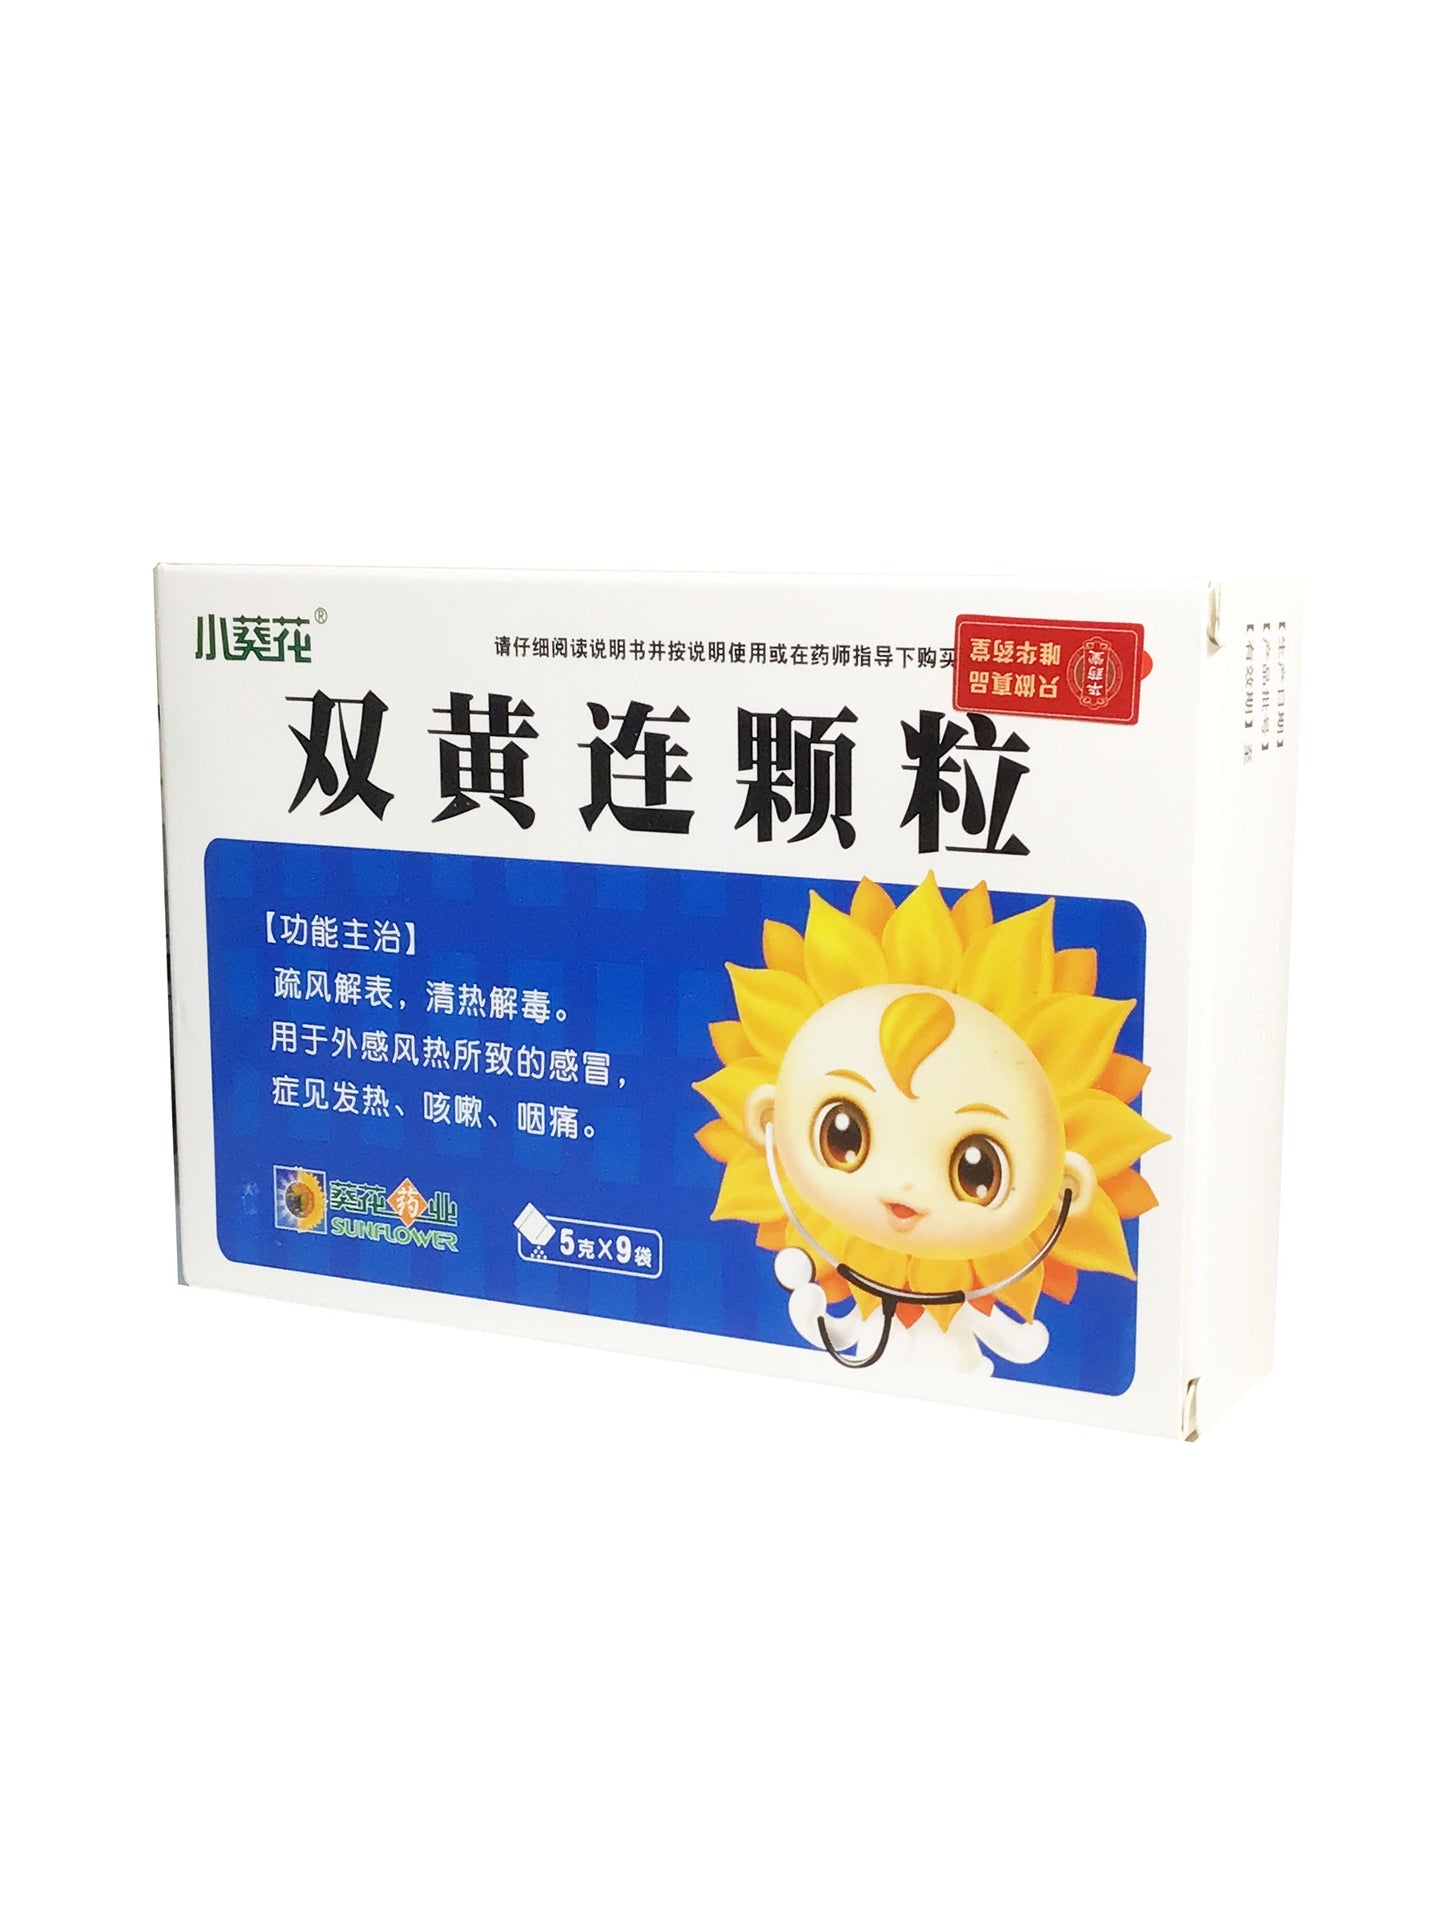 Shuanghuanglian Granules (5g x 9 packets) 小葵花 双黄连颗粒 (5克 x 9小包)